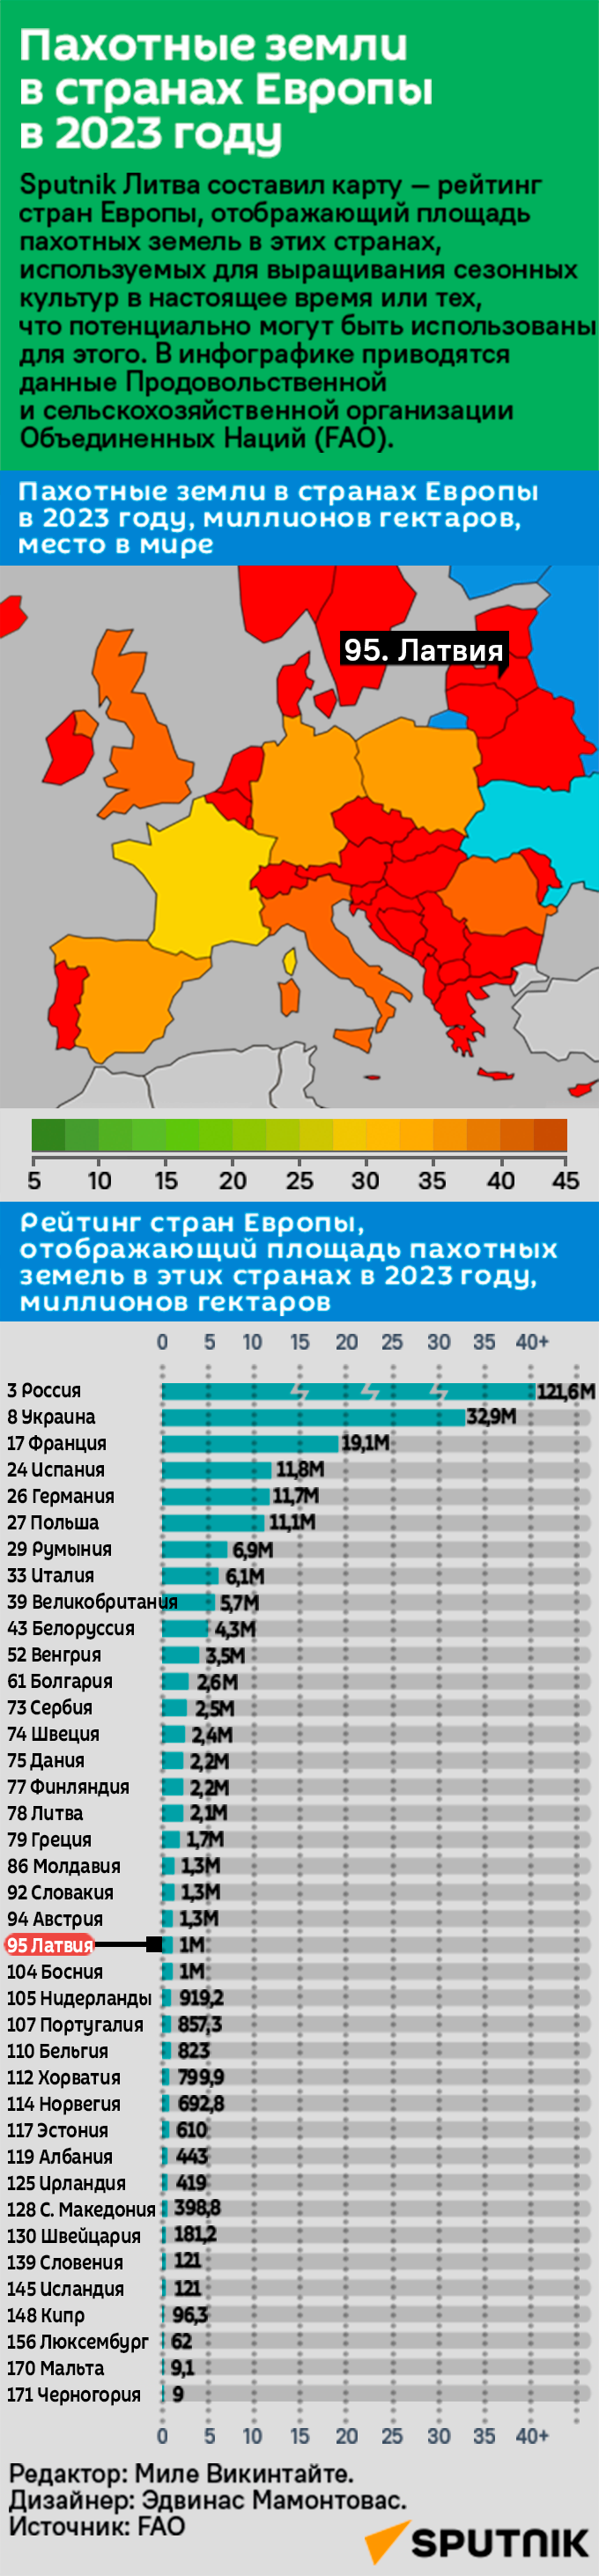 Пахотные земли в странах Европы в 2023 году  - Sputnik Латвия